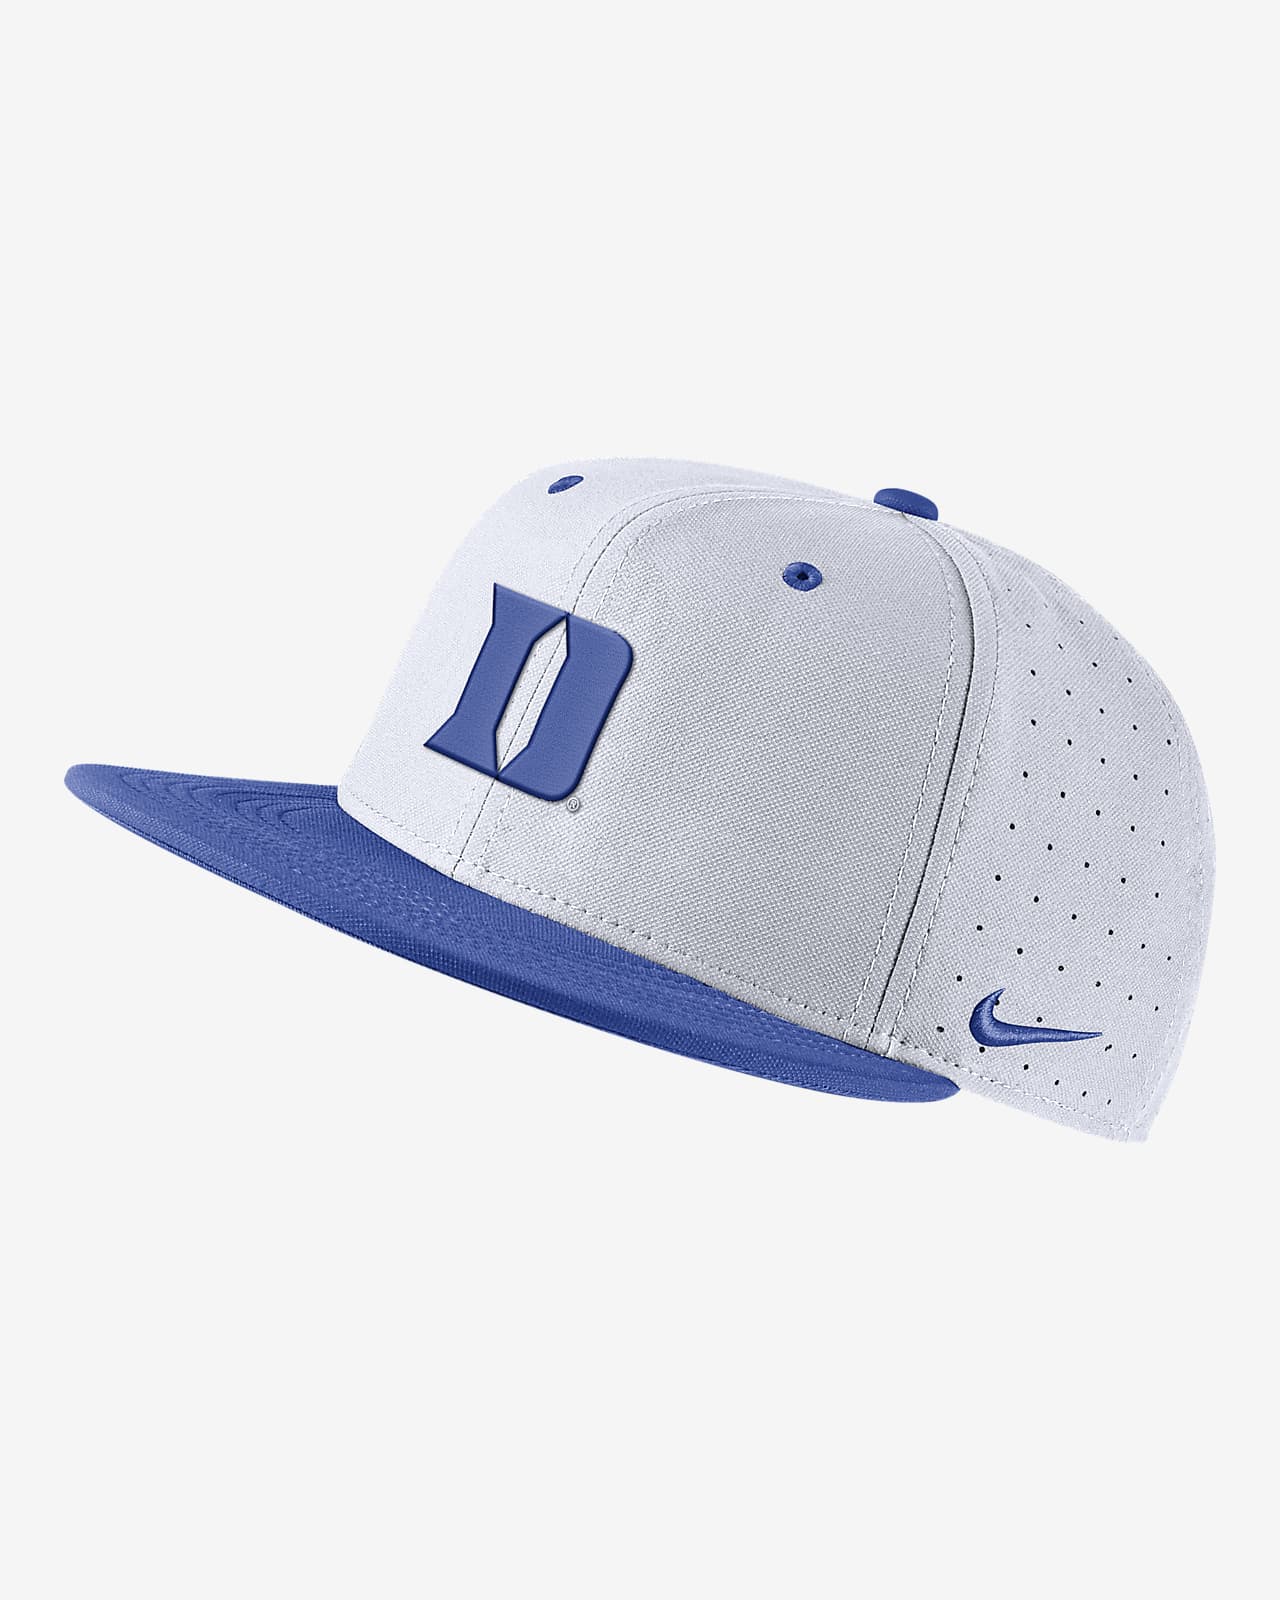 Duke Nike College Fitted Baseball Hat.